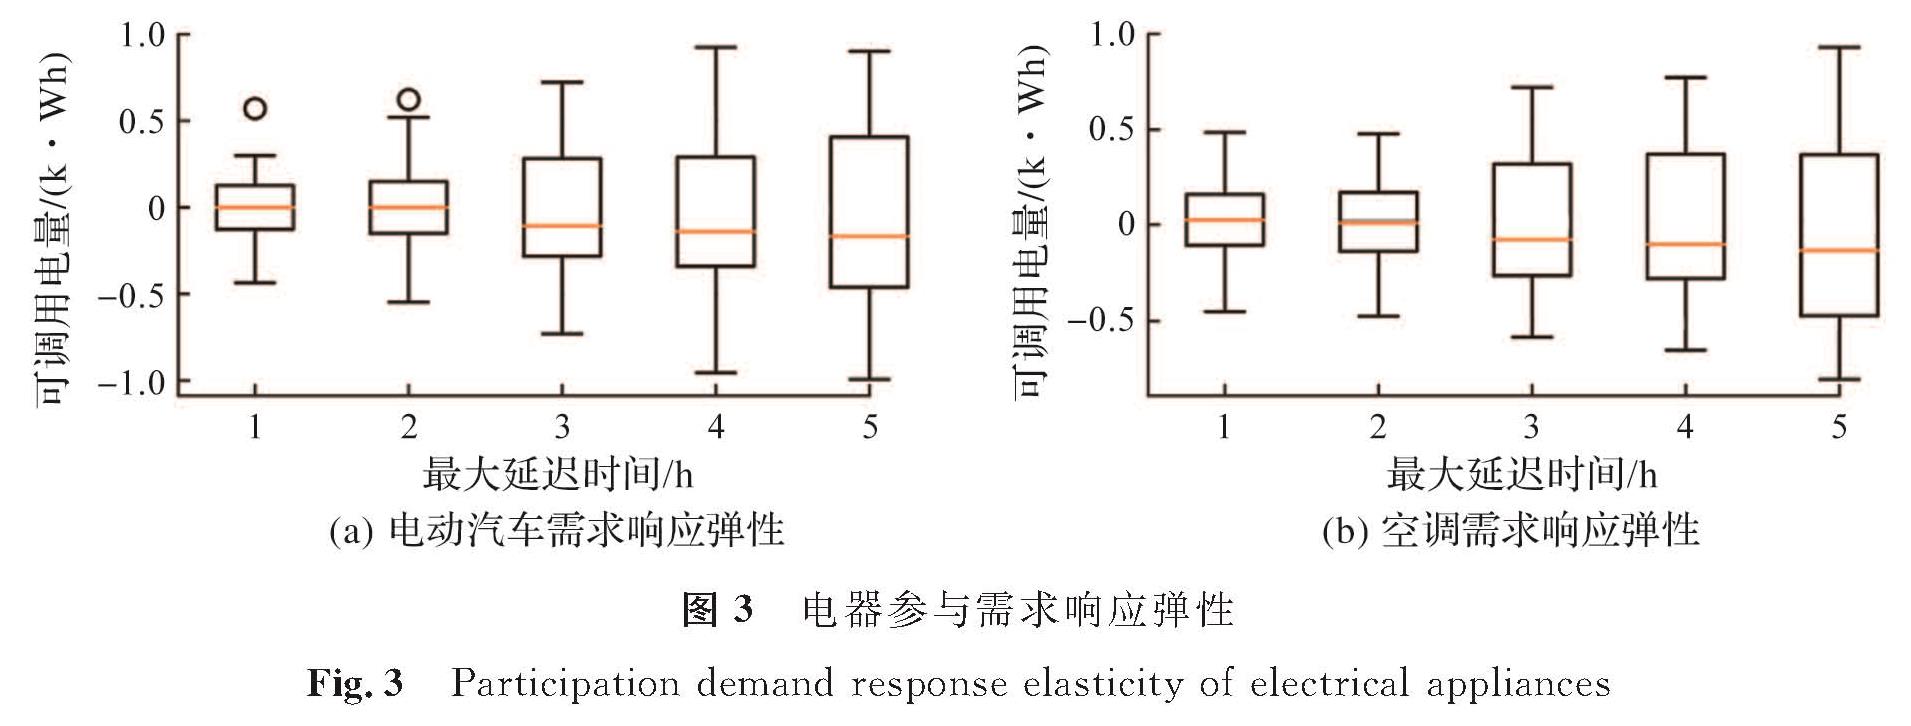 图3 电器参与需求响应弹性<br/>Fig.3 Participation demand response elasticity of electrical appliances